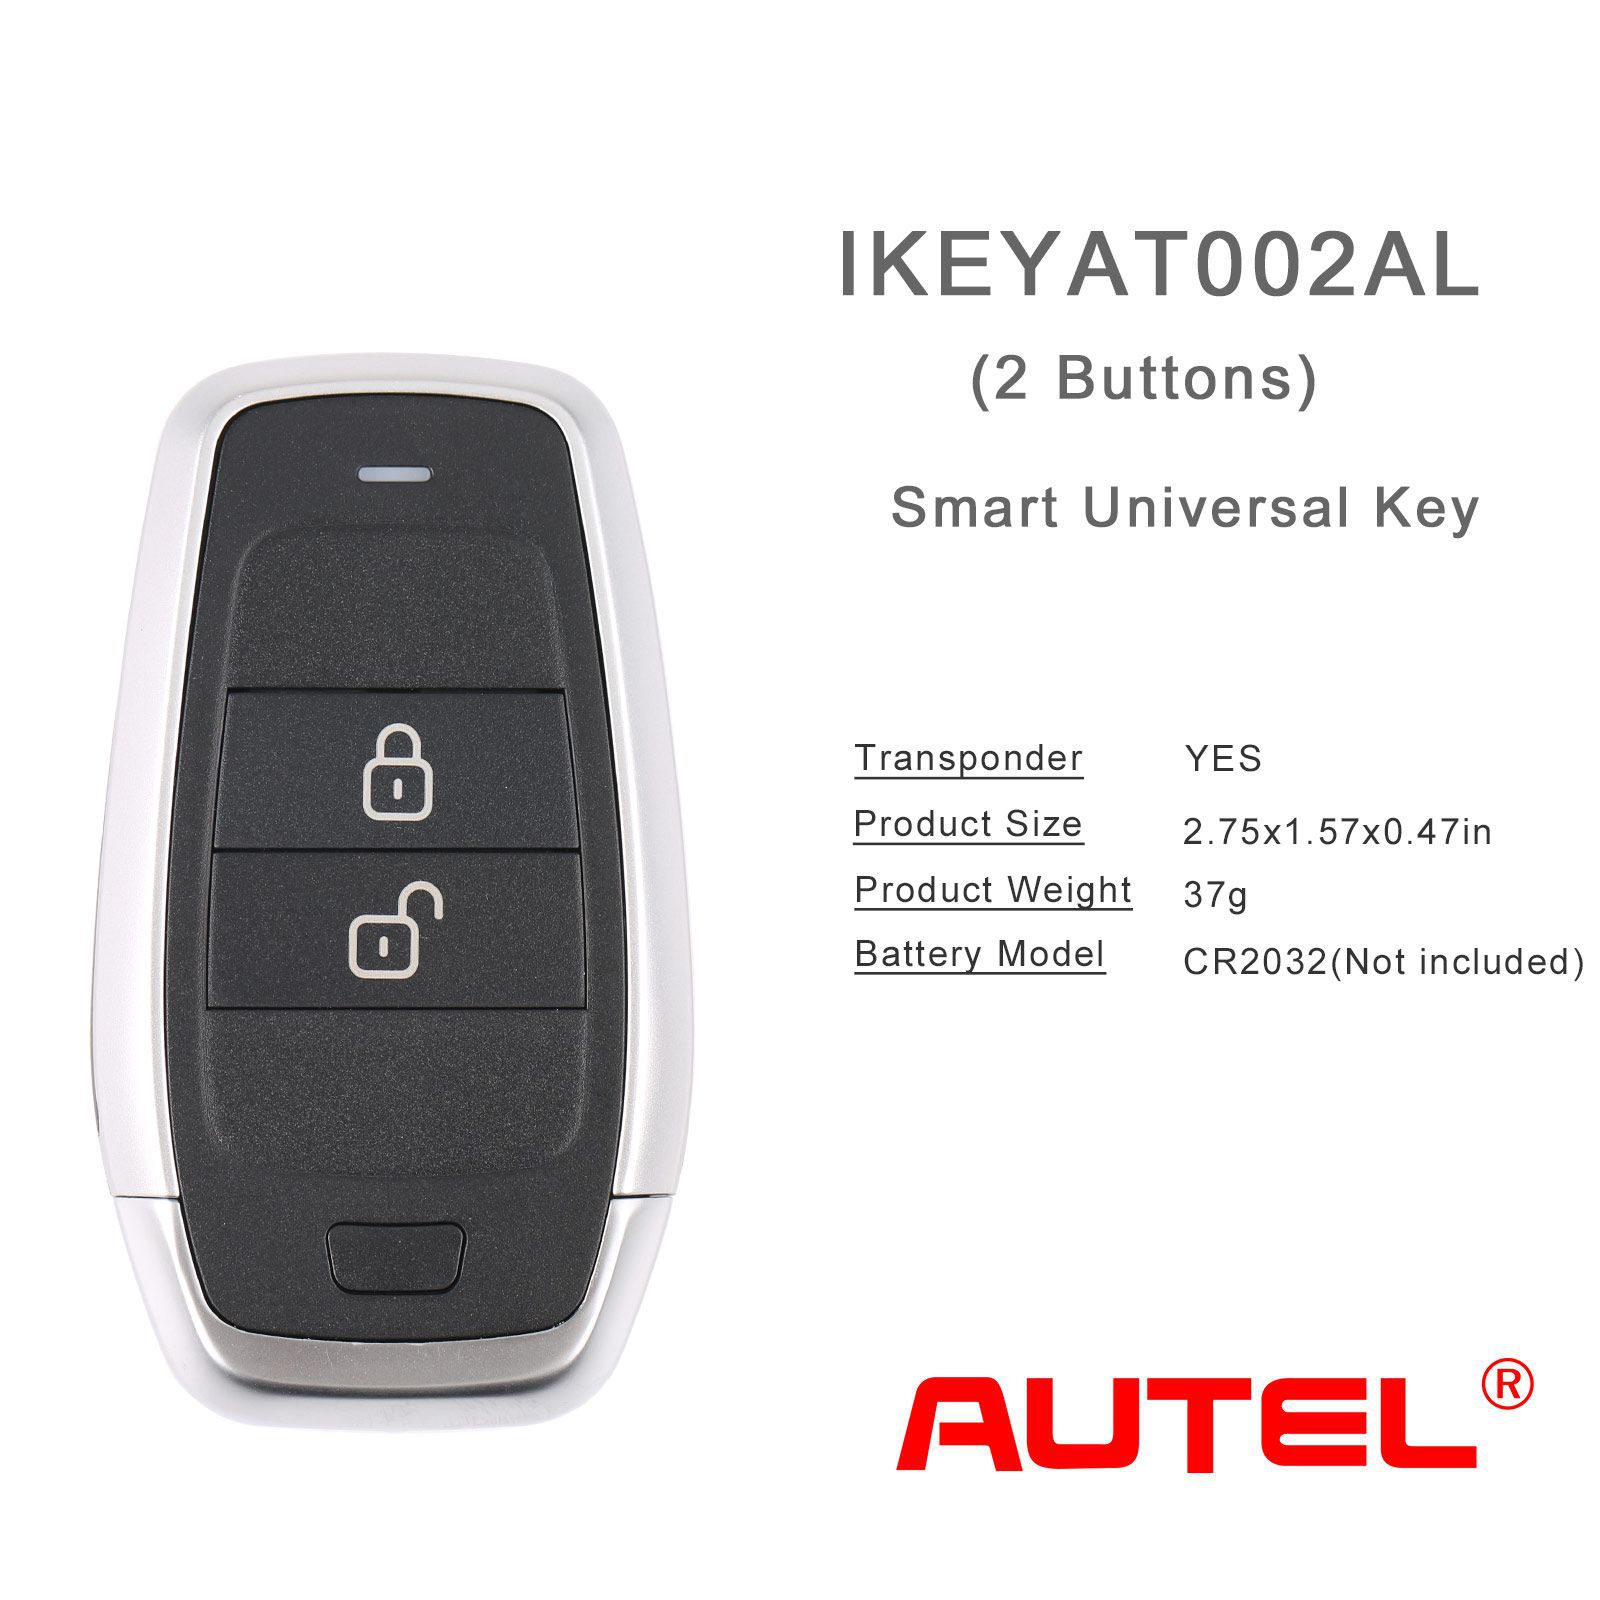 Autel ikeyat002al 2 boutons clés intelligentes universelles indépendantes 5pcs / lot